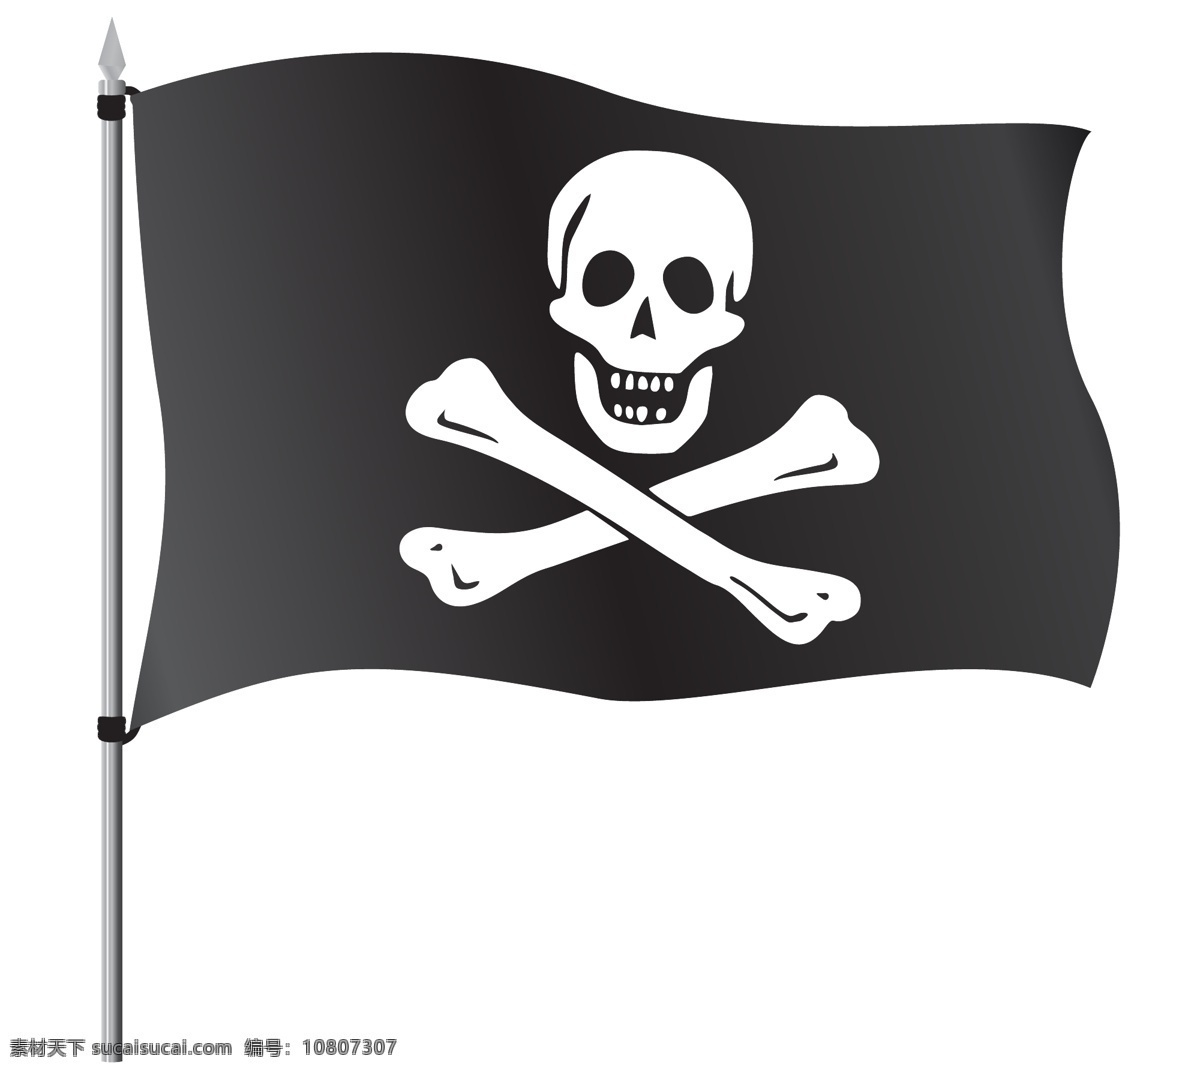 海盗旗 海盗 骷髅 旗子 生活百科 矢量素材 白色